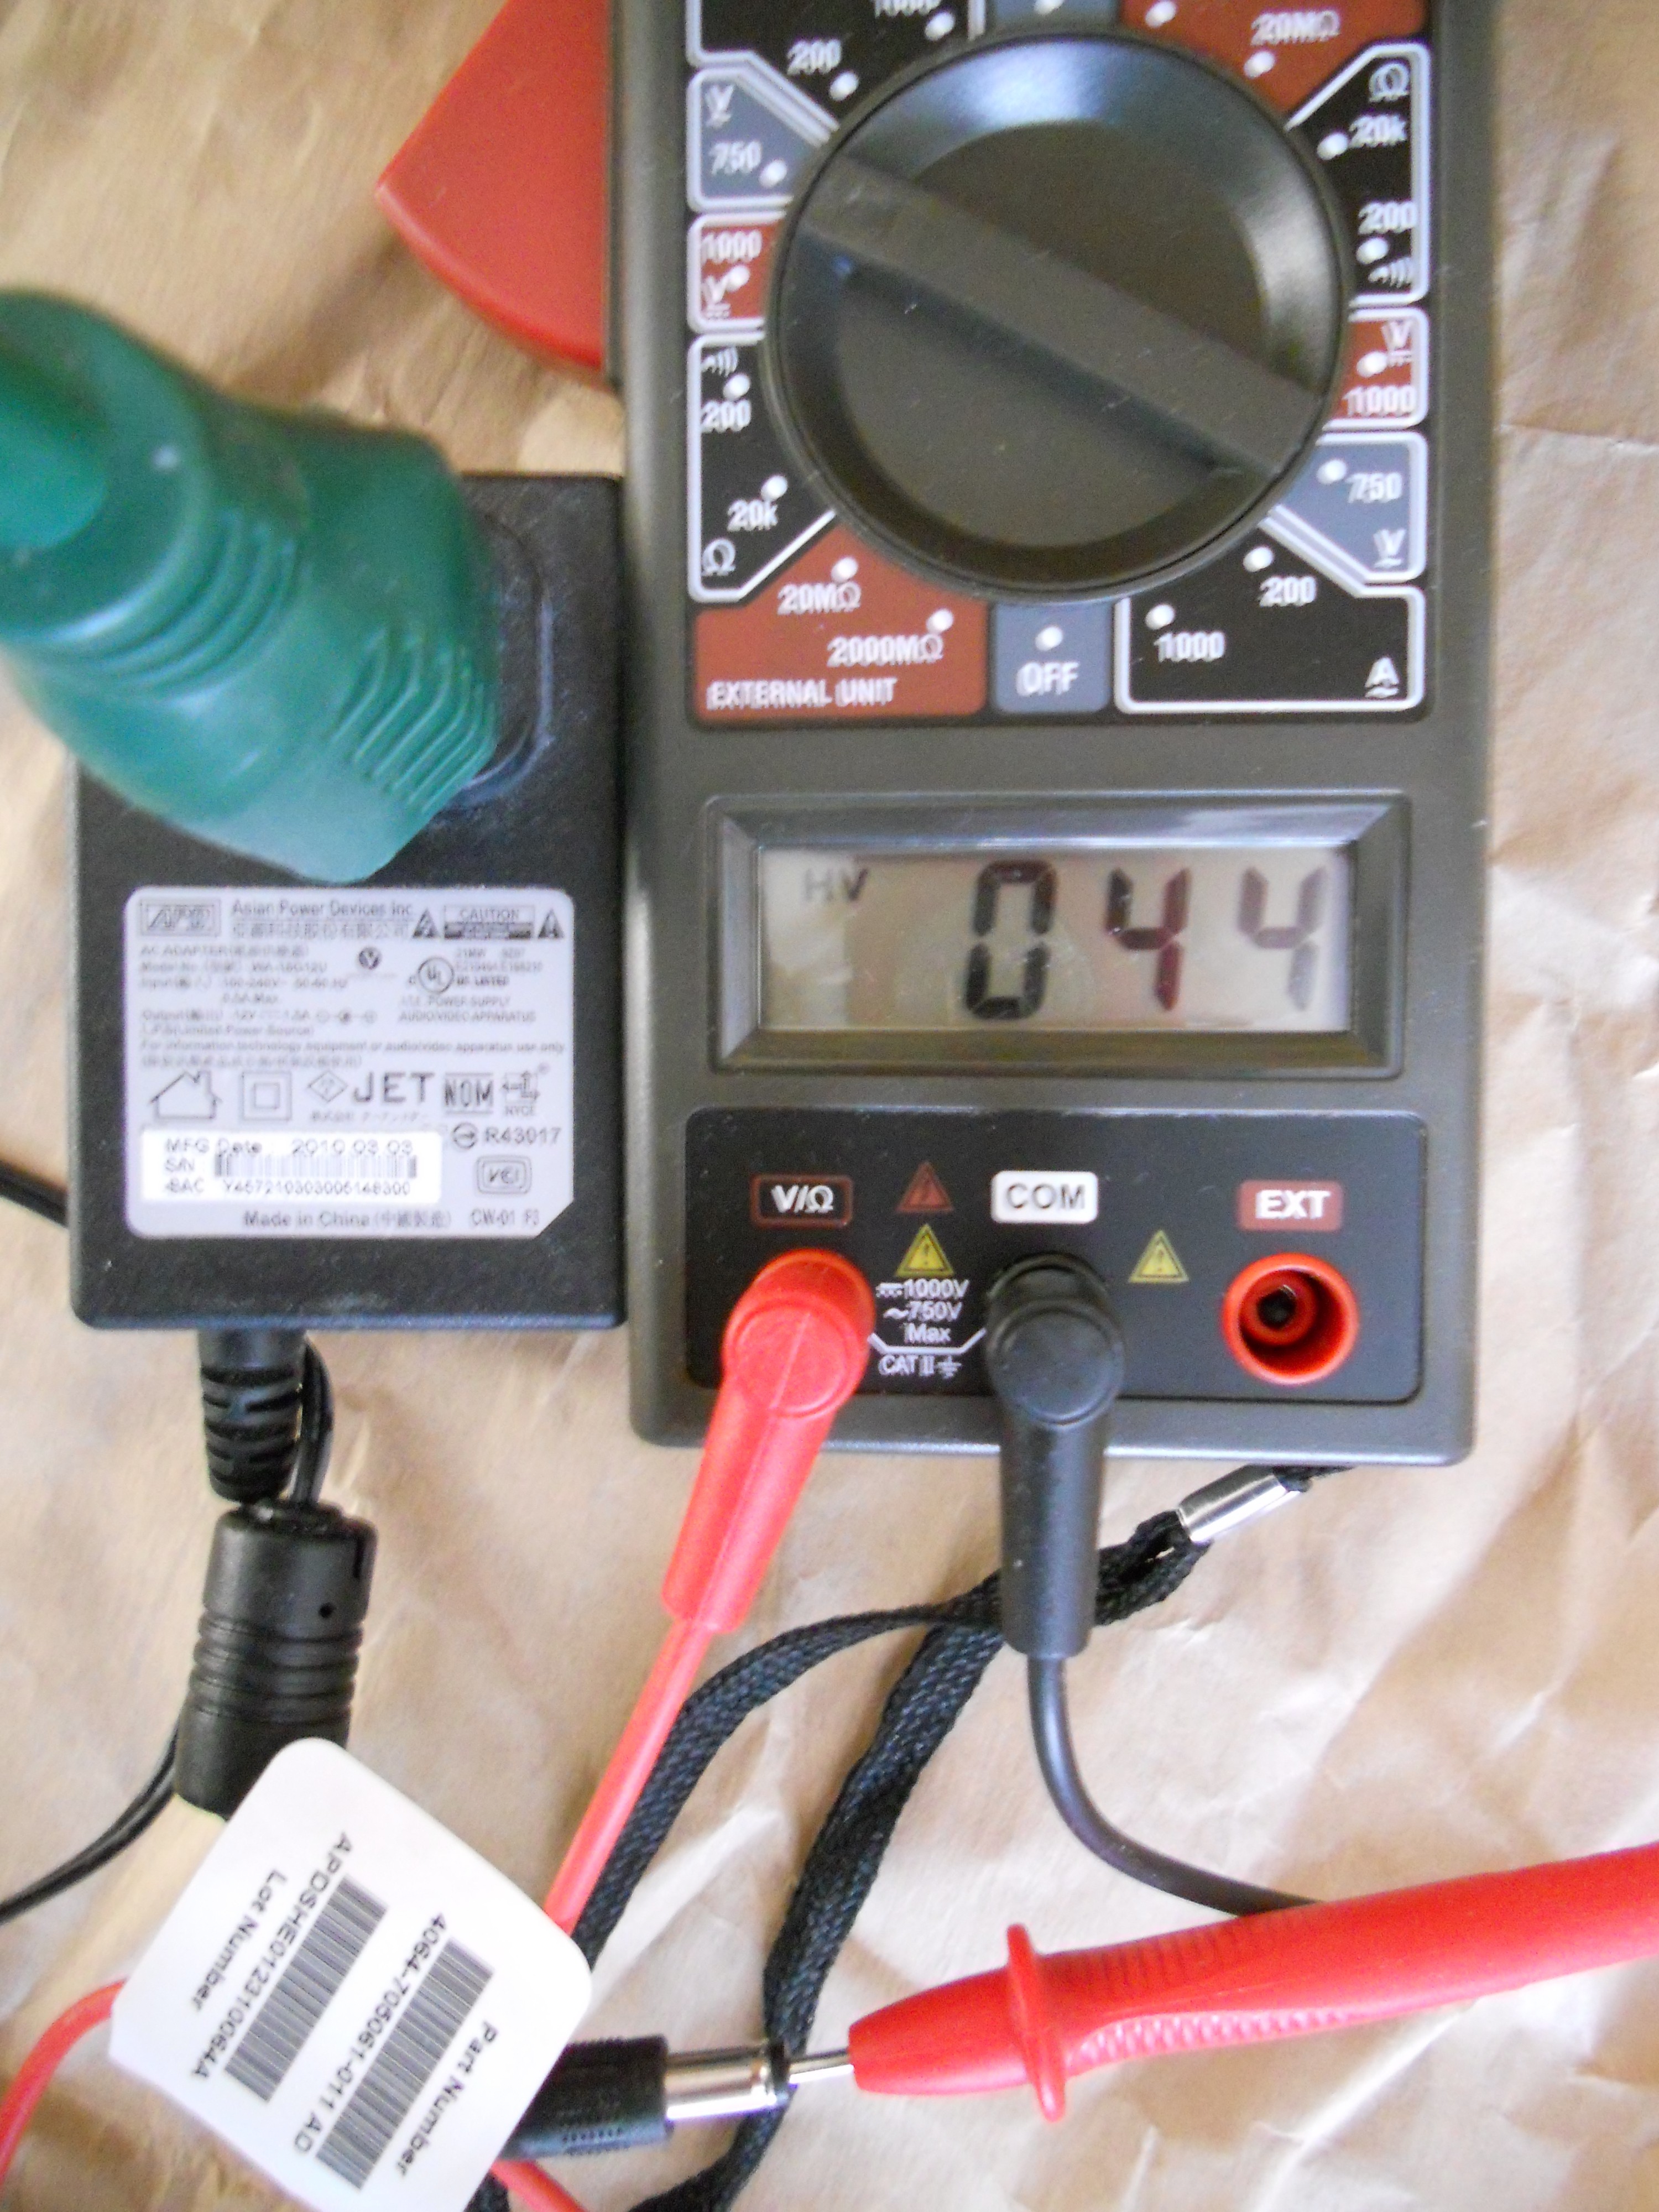 Western Digita Power Supply #3 - 44 volts leakage